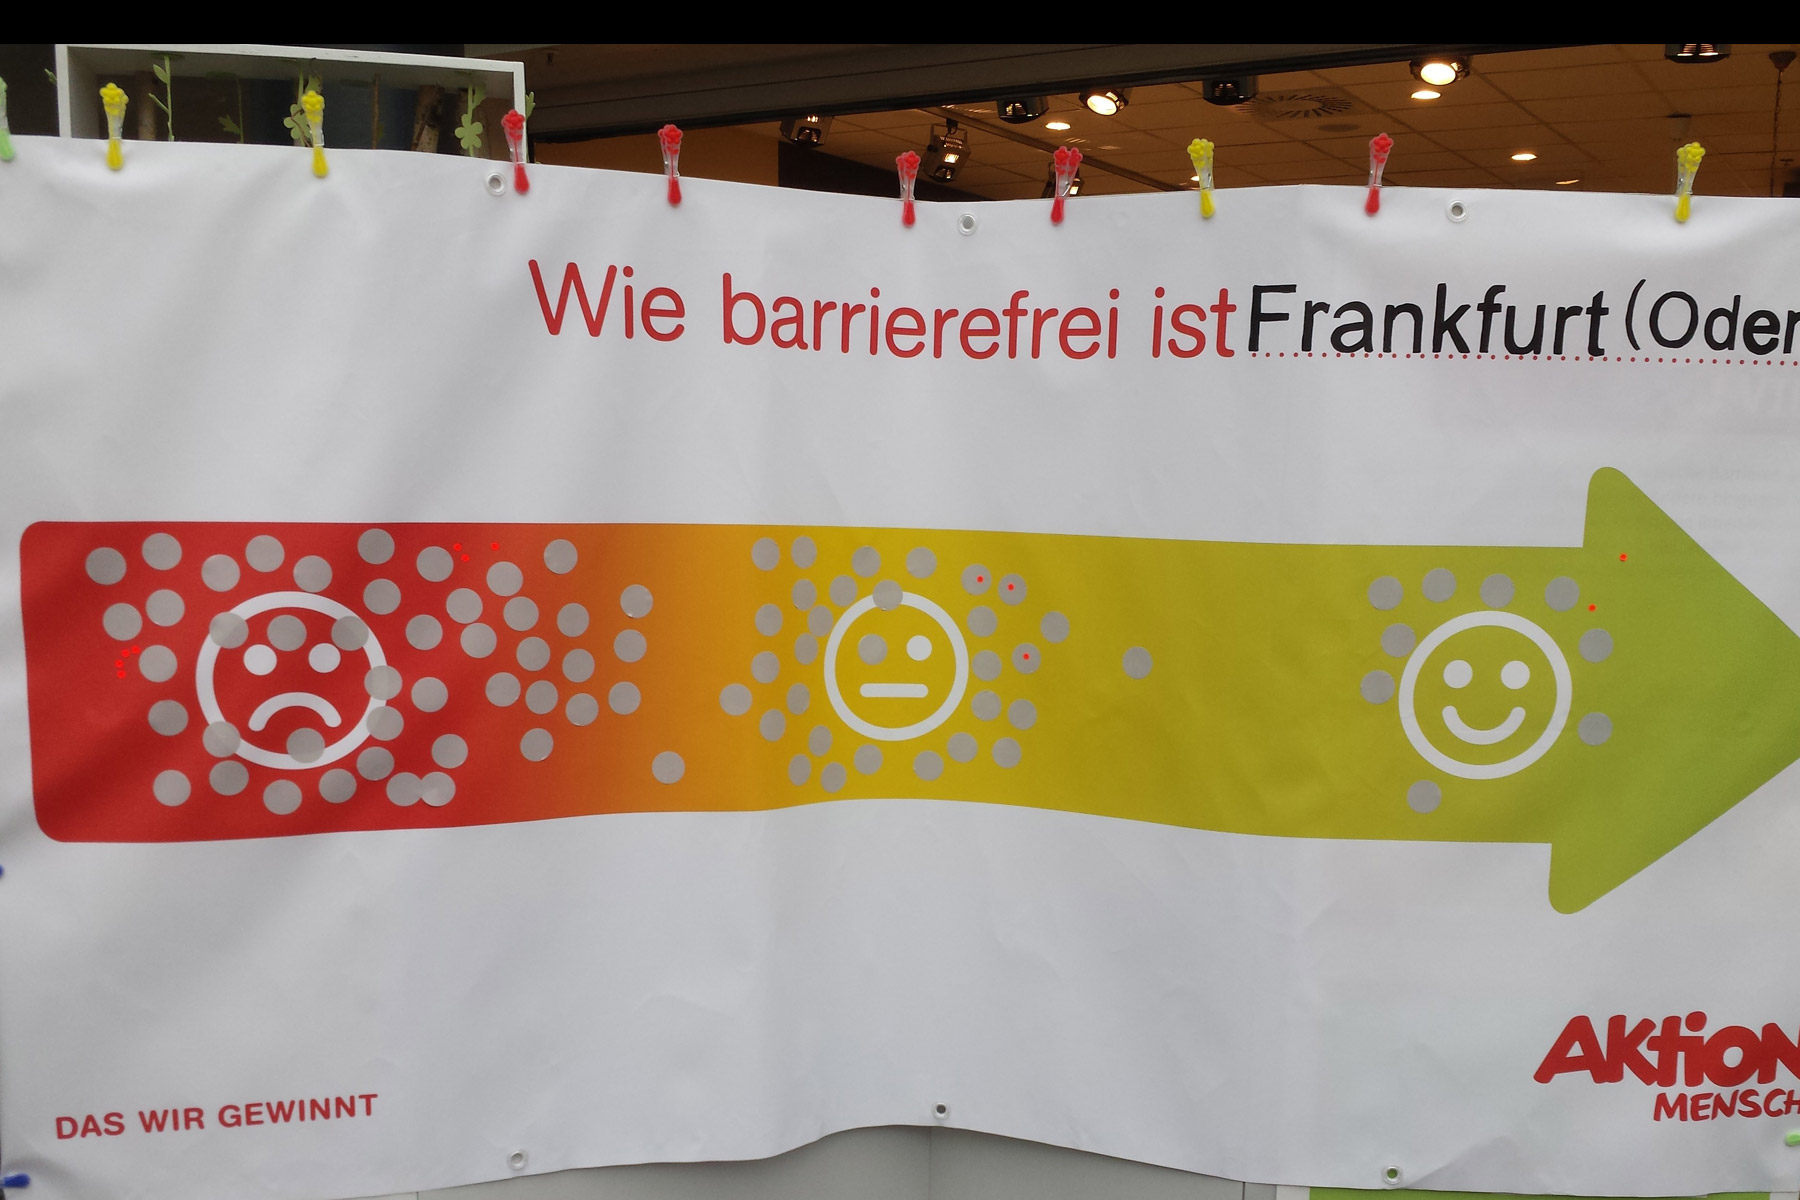 2016 - Frankfurt wird auf Barrierefreiheit geprüft #5Maibarrierefrei